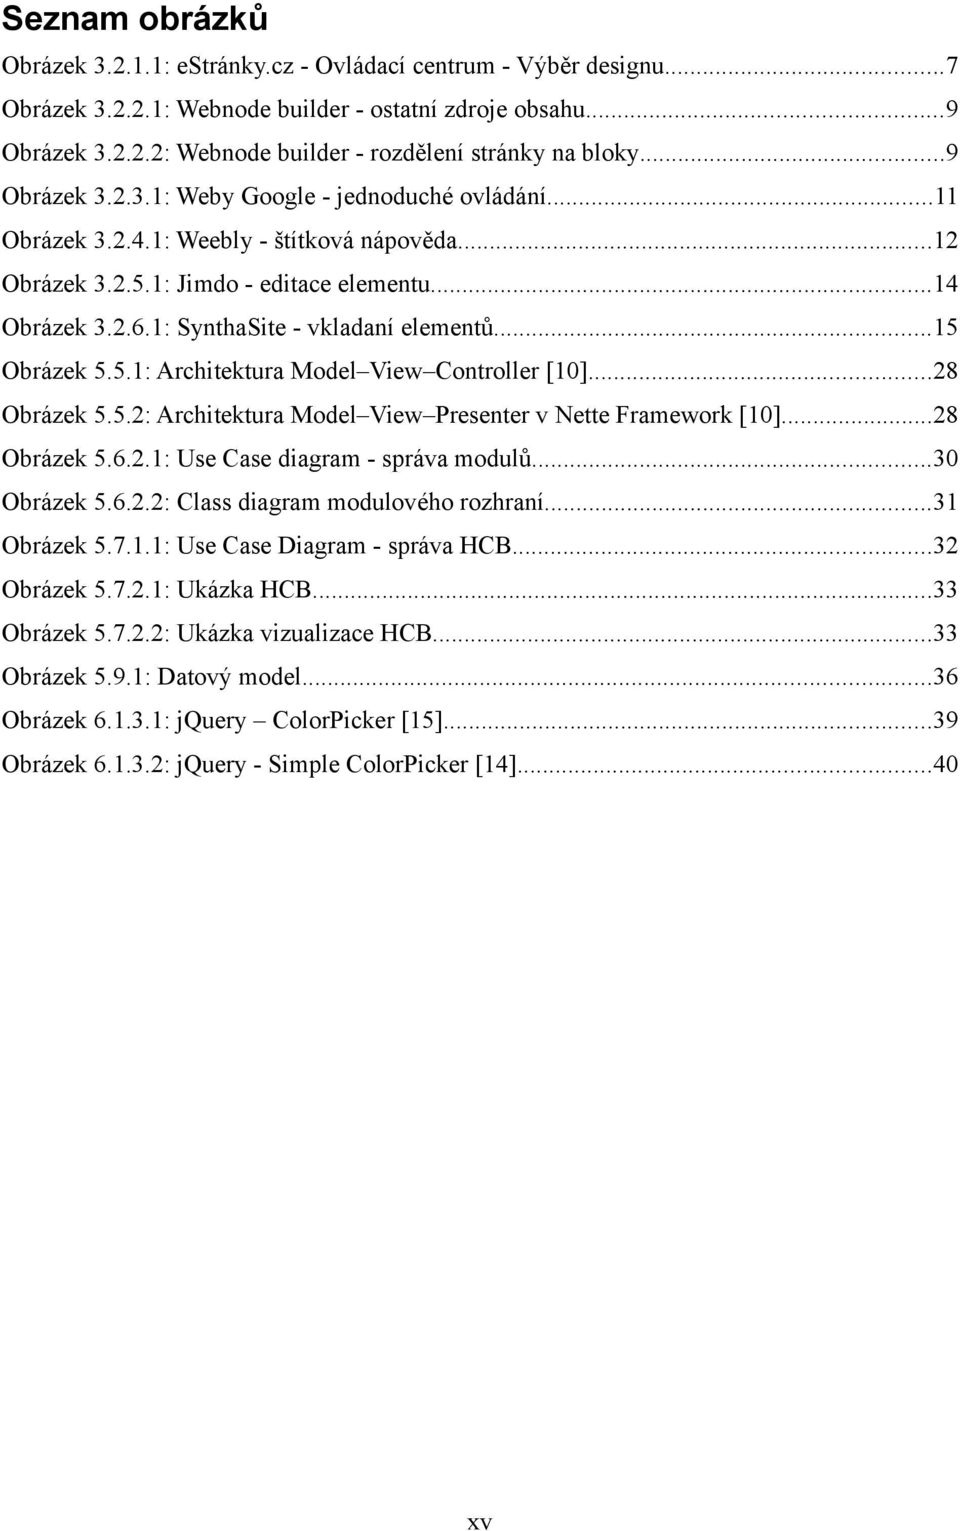 1: SynthaSite - vkladaní elementů...15 Obrázek 5.5.1: Architektura Model View Controller [10]...28 Obrázek 5.5.2: Architektura Model View Presenter v Nette Framework [10]...28 Obrázek 5.6.2.1: Use Case diagram - správa modulů.